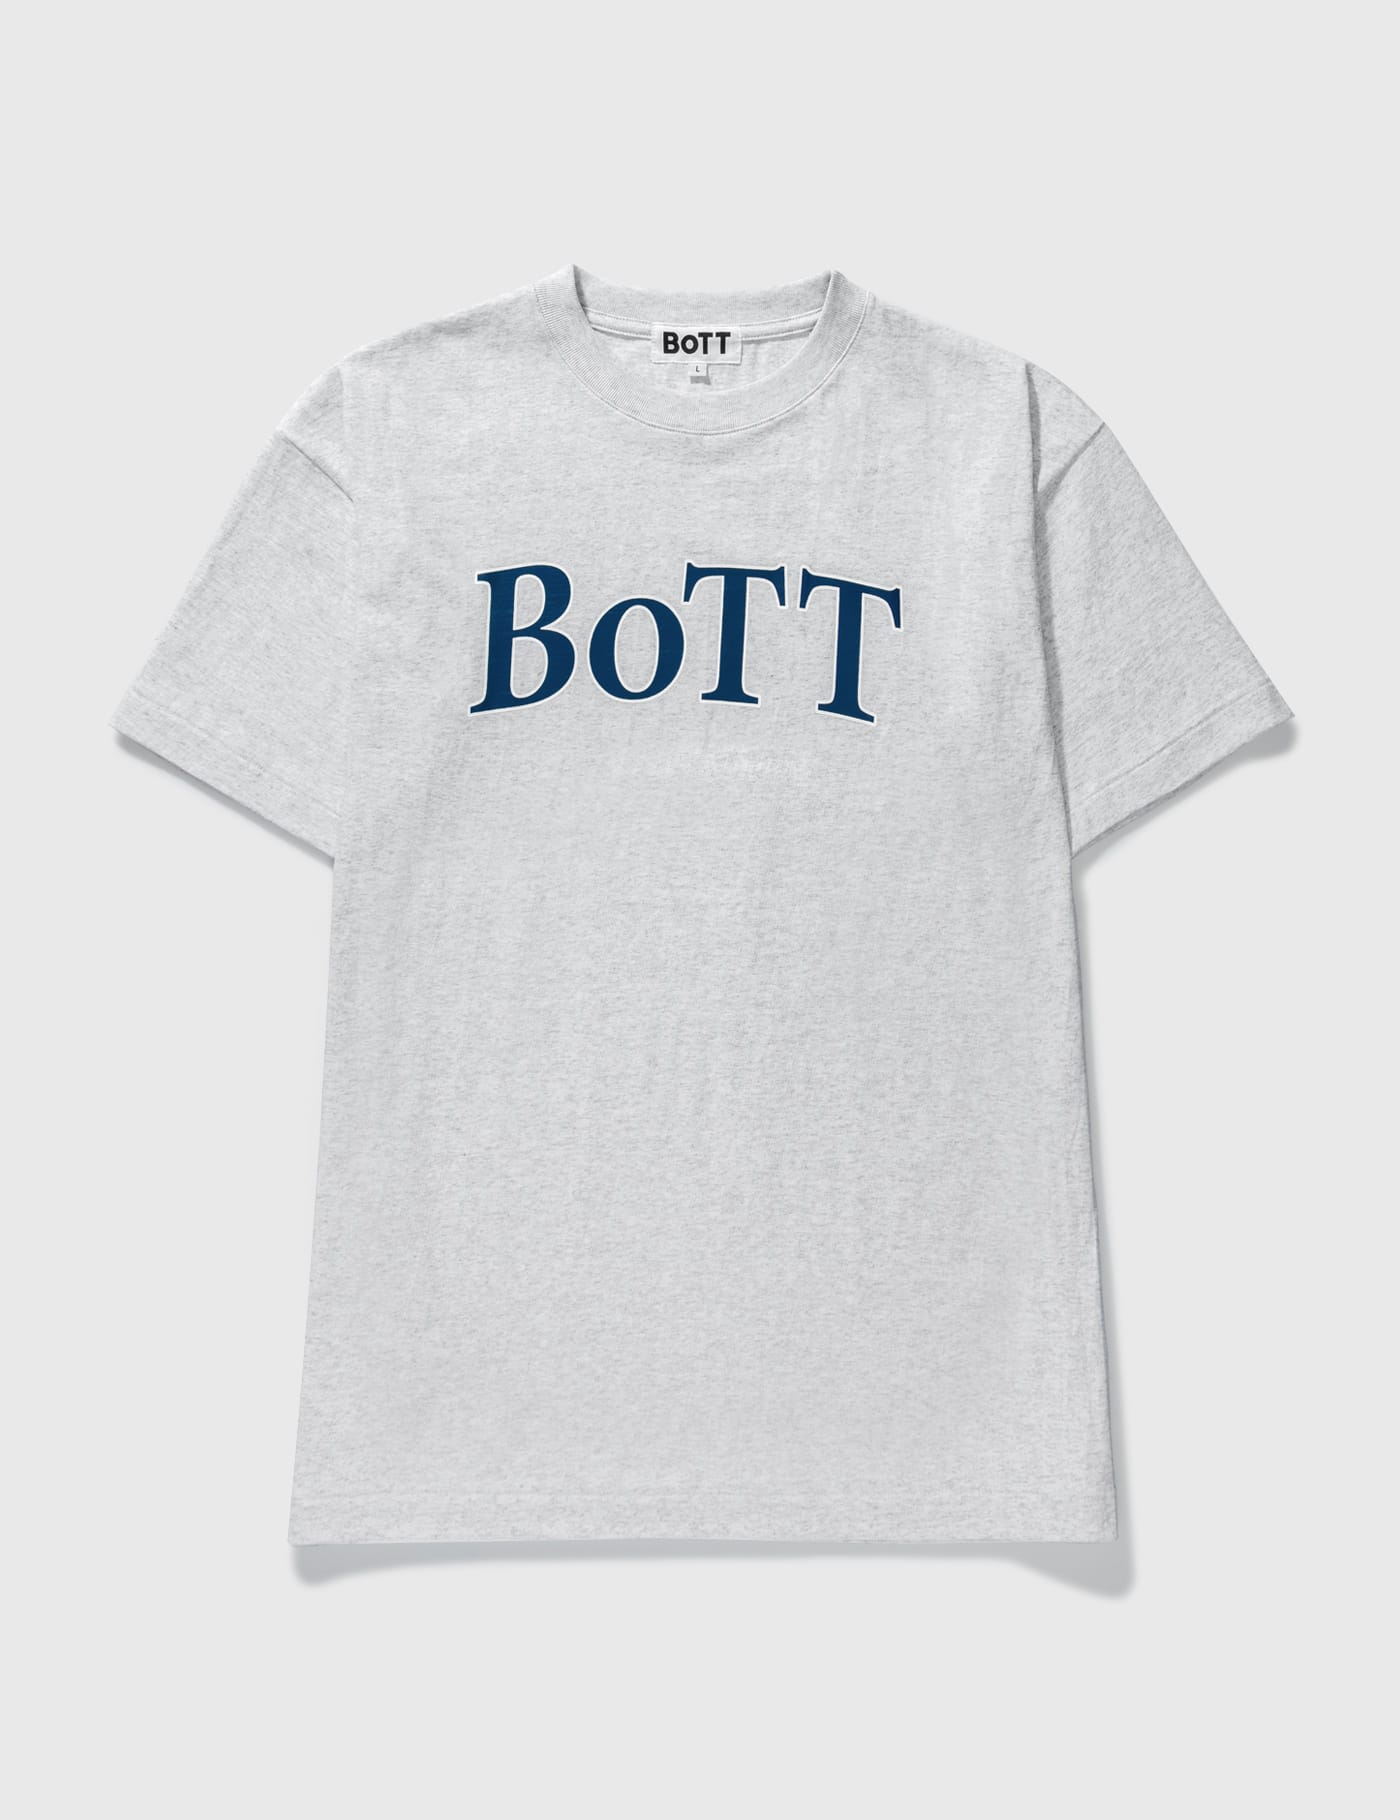 BoTT - BoTT OG Logo T-shirt | HBX - ハイプビースト(Hypebeast)が 